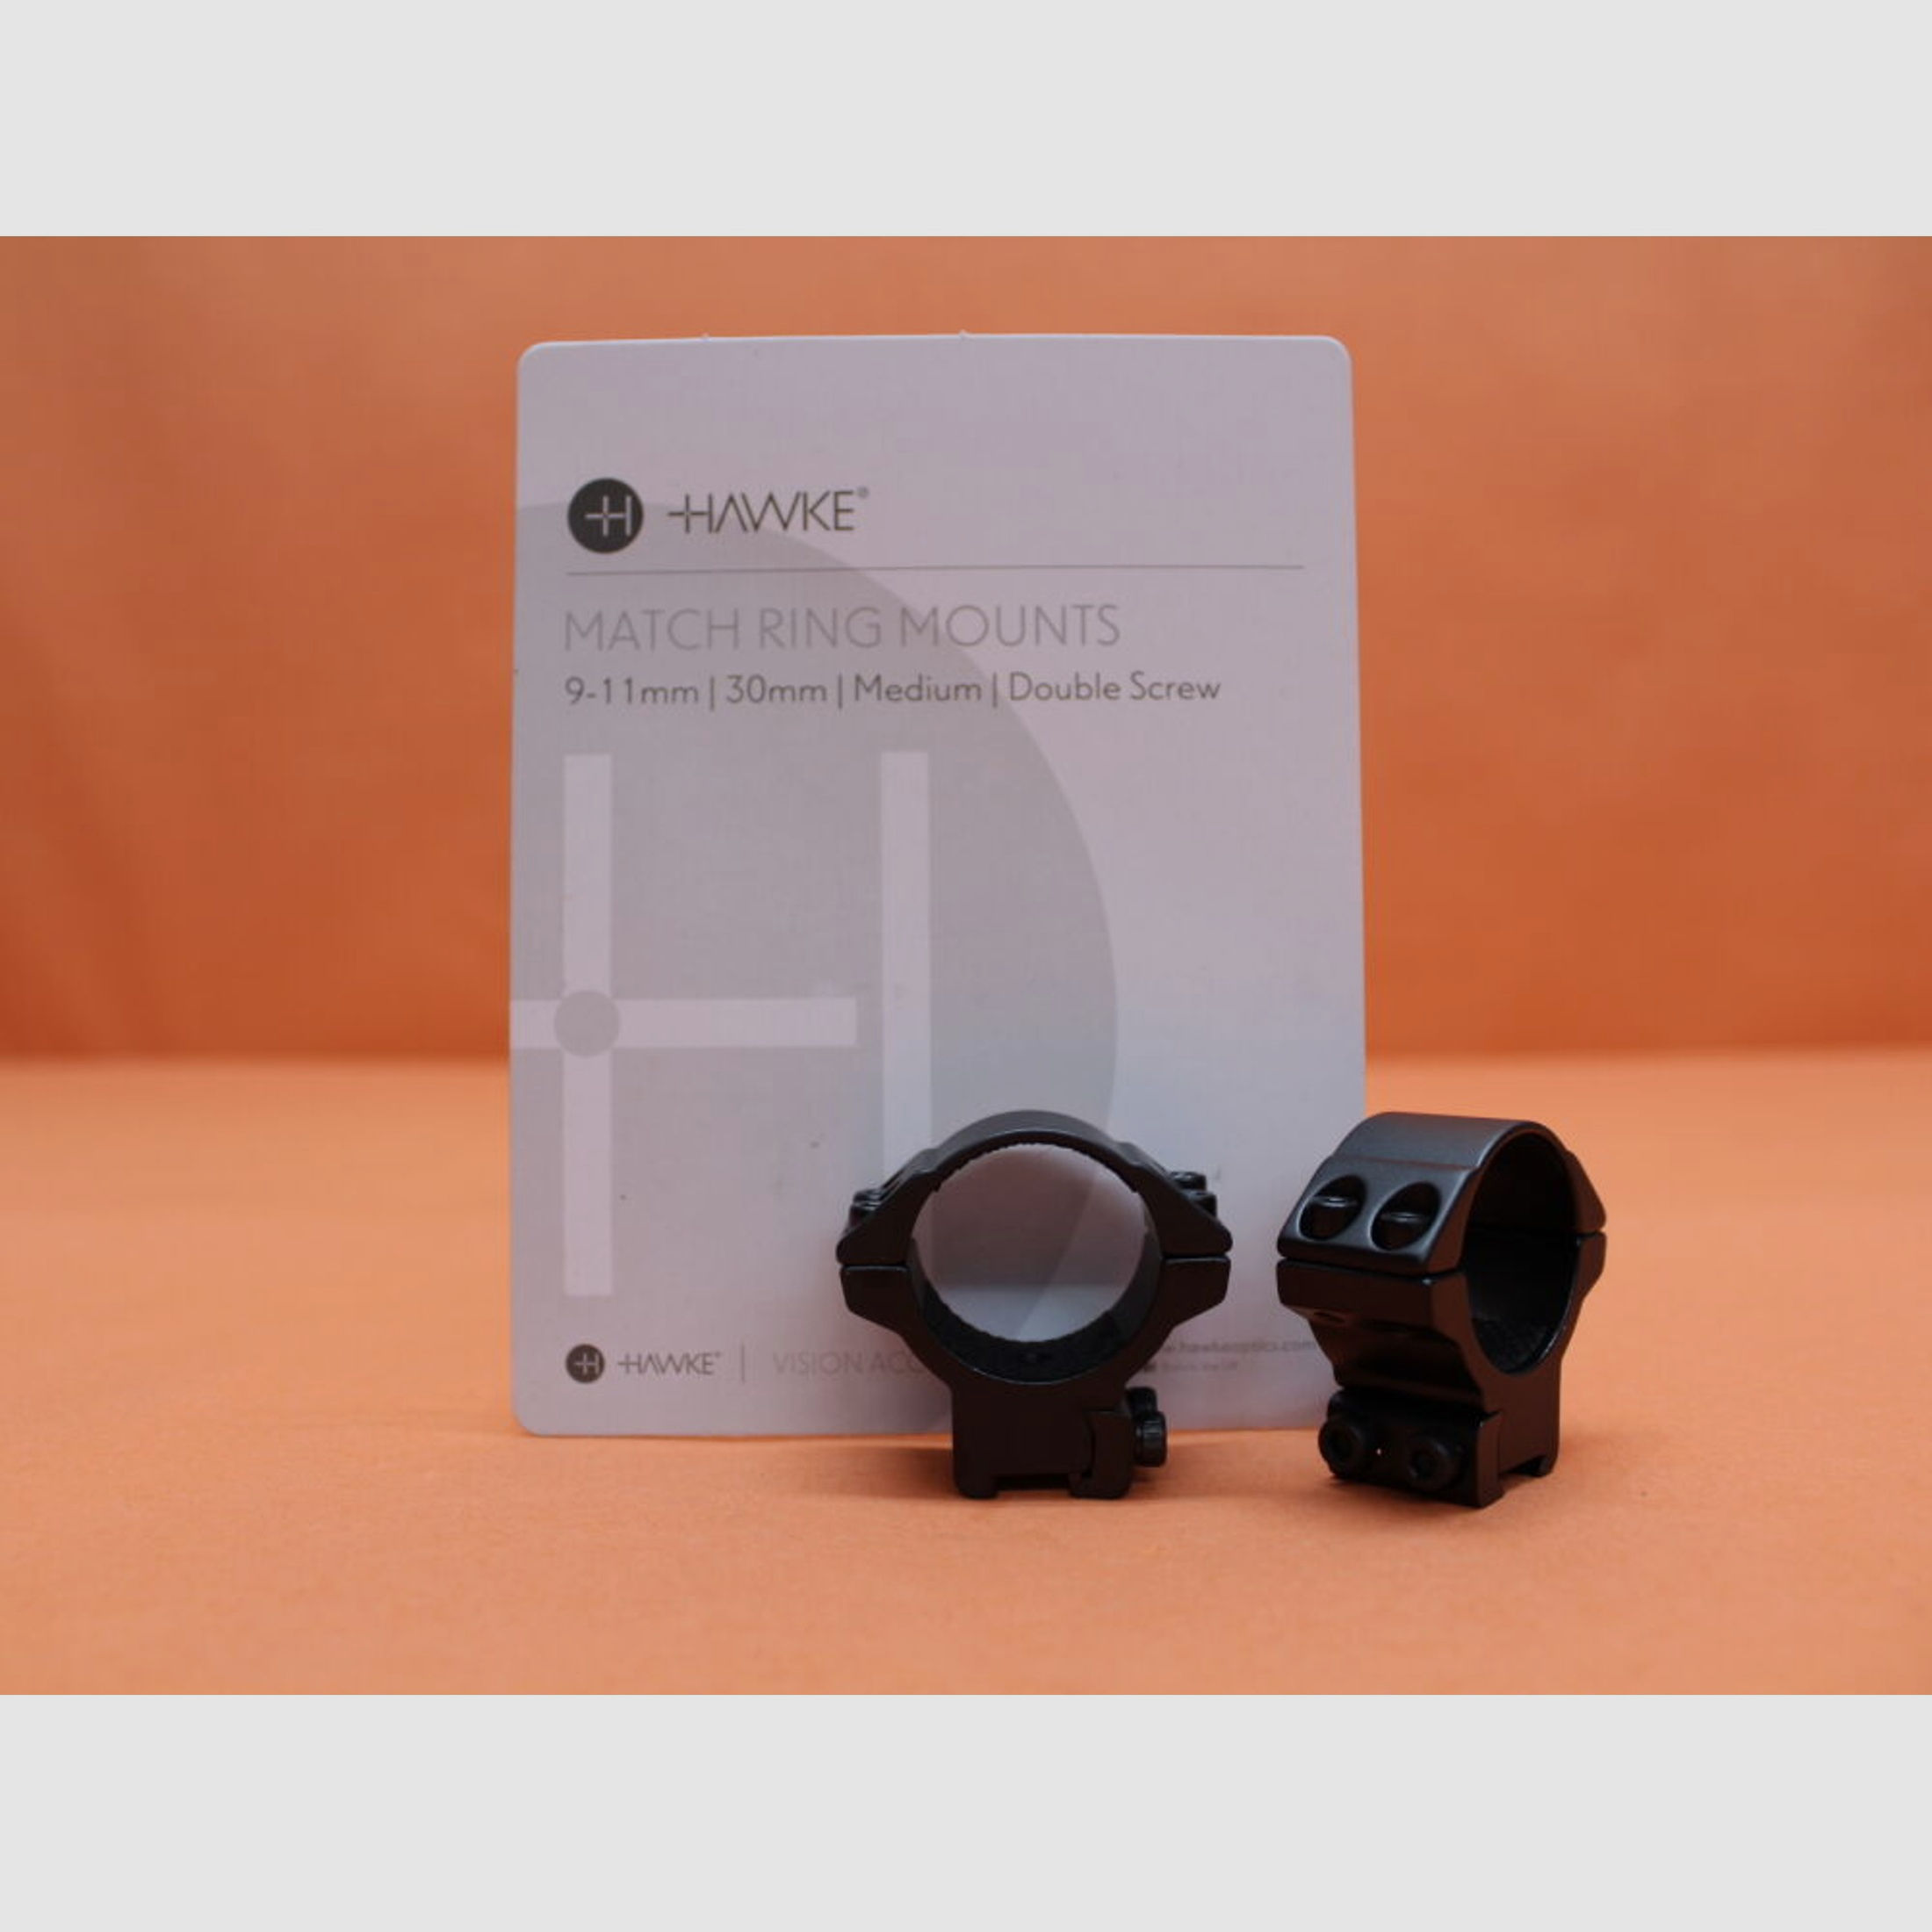 HAWKE	 HAWKE Montageringe Match 30mm medium (22107) BH=11mm Alu schwarz matt für 9-11mm Prismenschiene